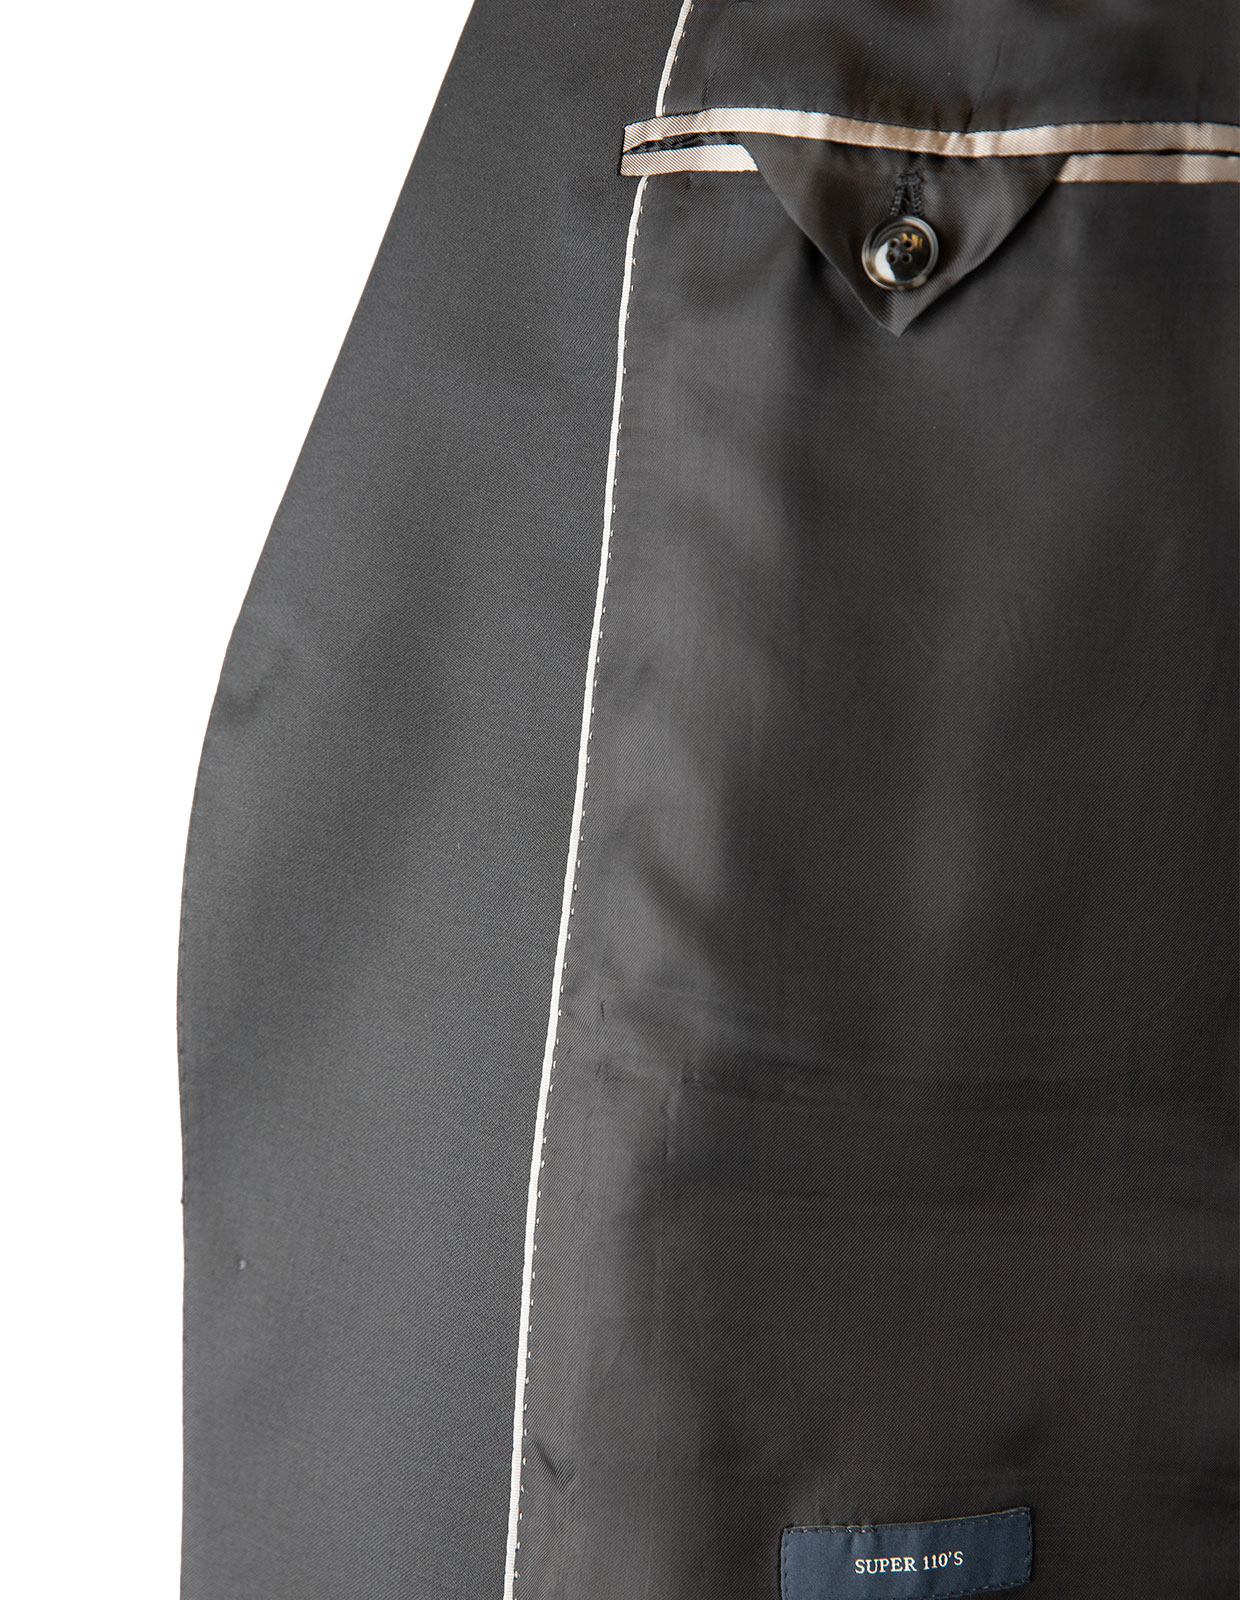 Edson Suit Jacket 110's Wool Mix & Match Black Stl 54